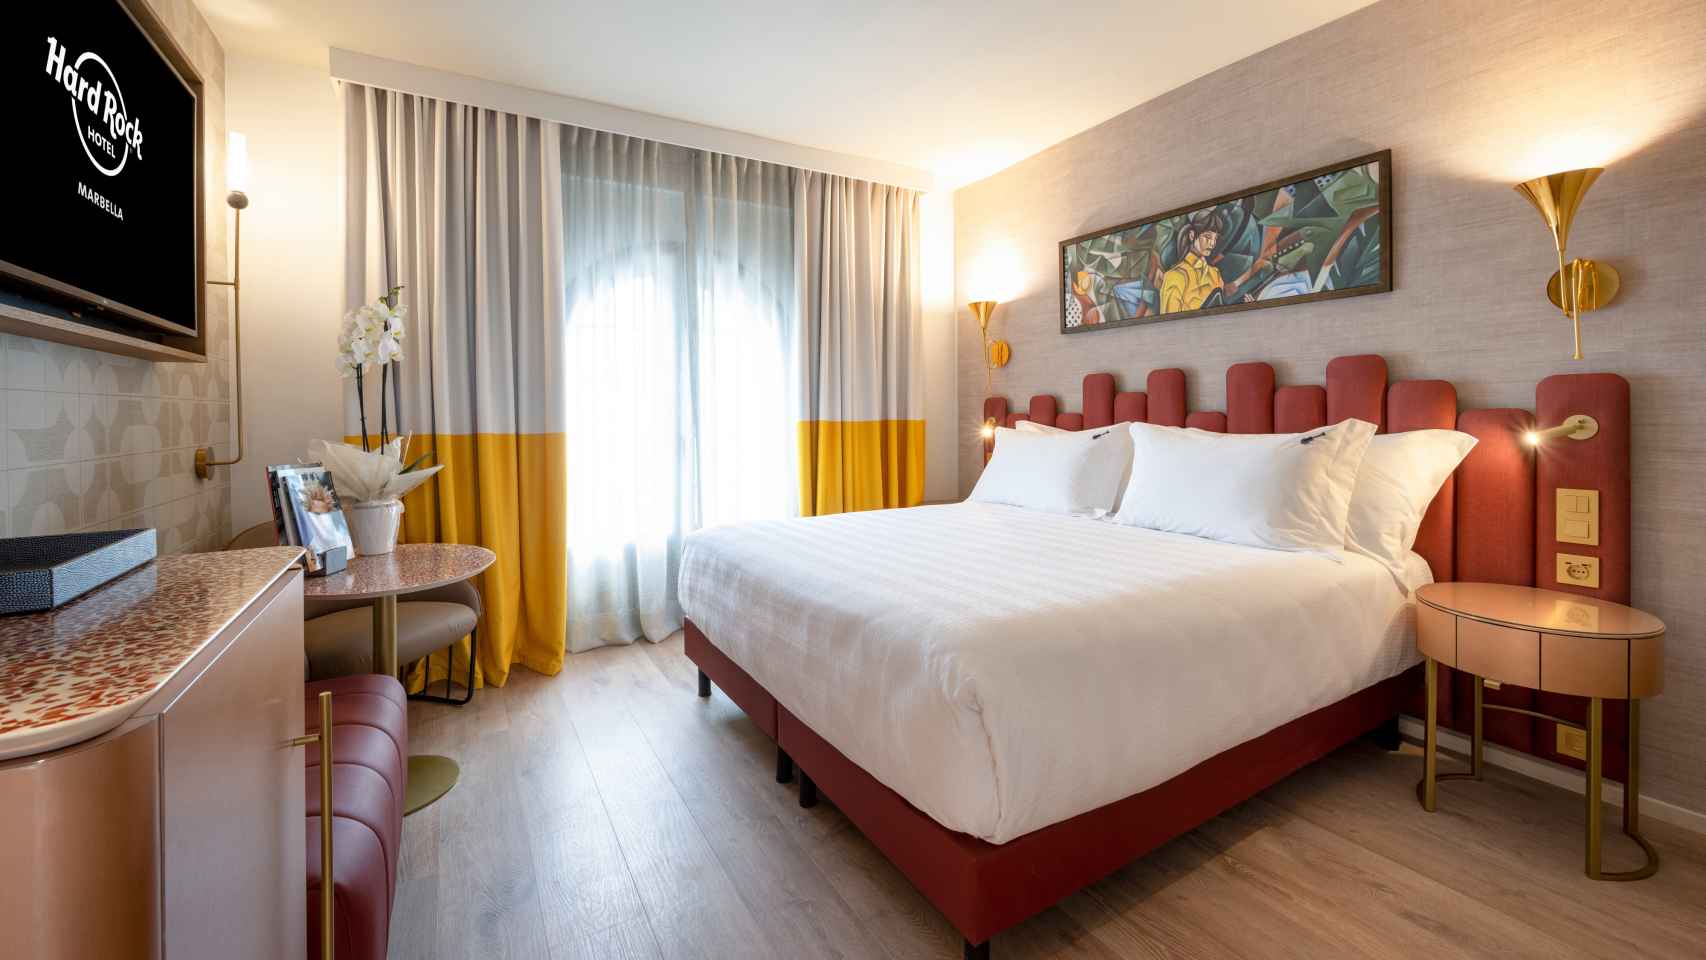 Una habitación del hotel Hard Rock Marbella.